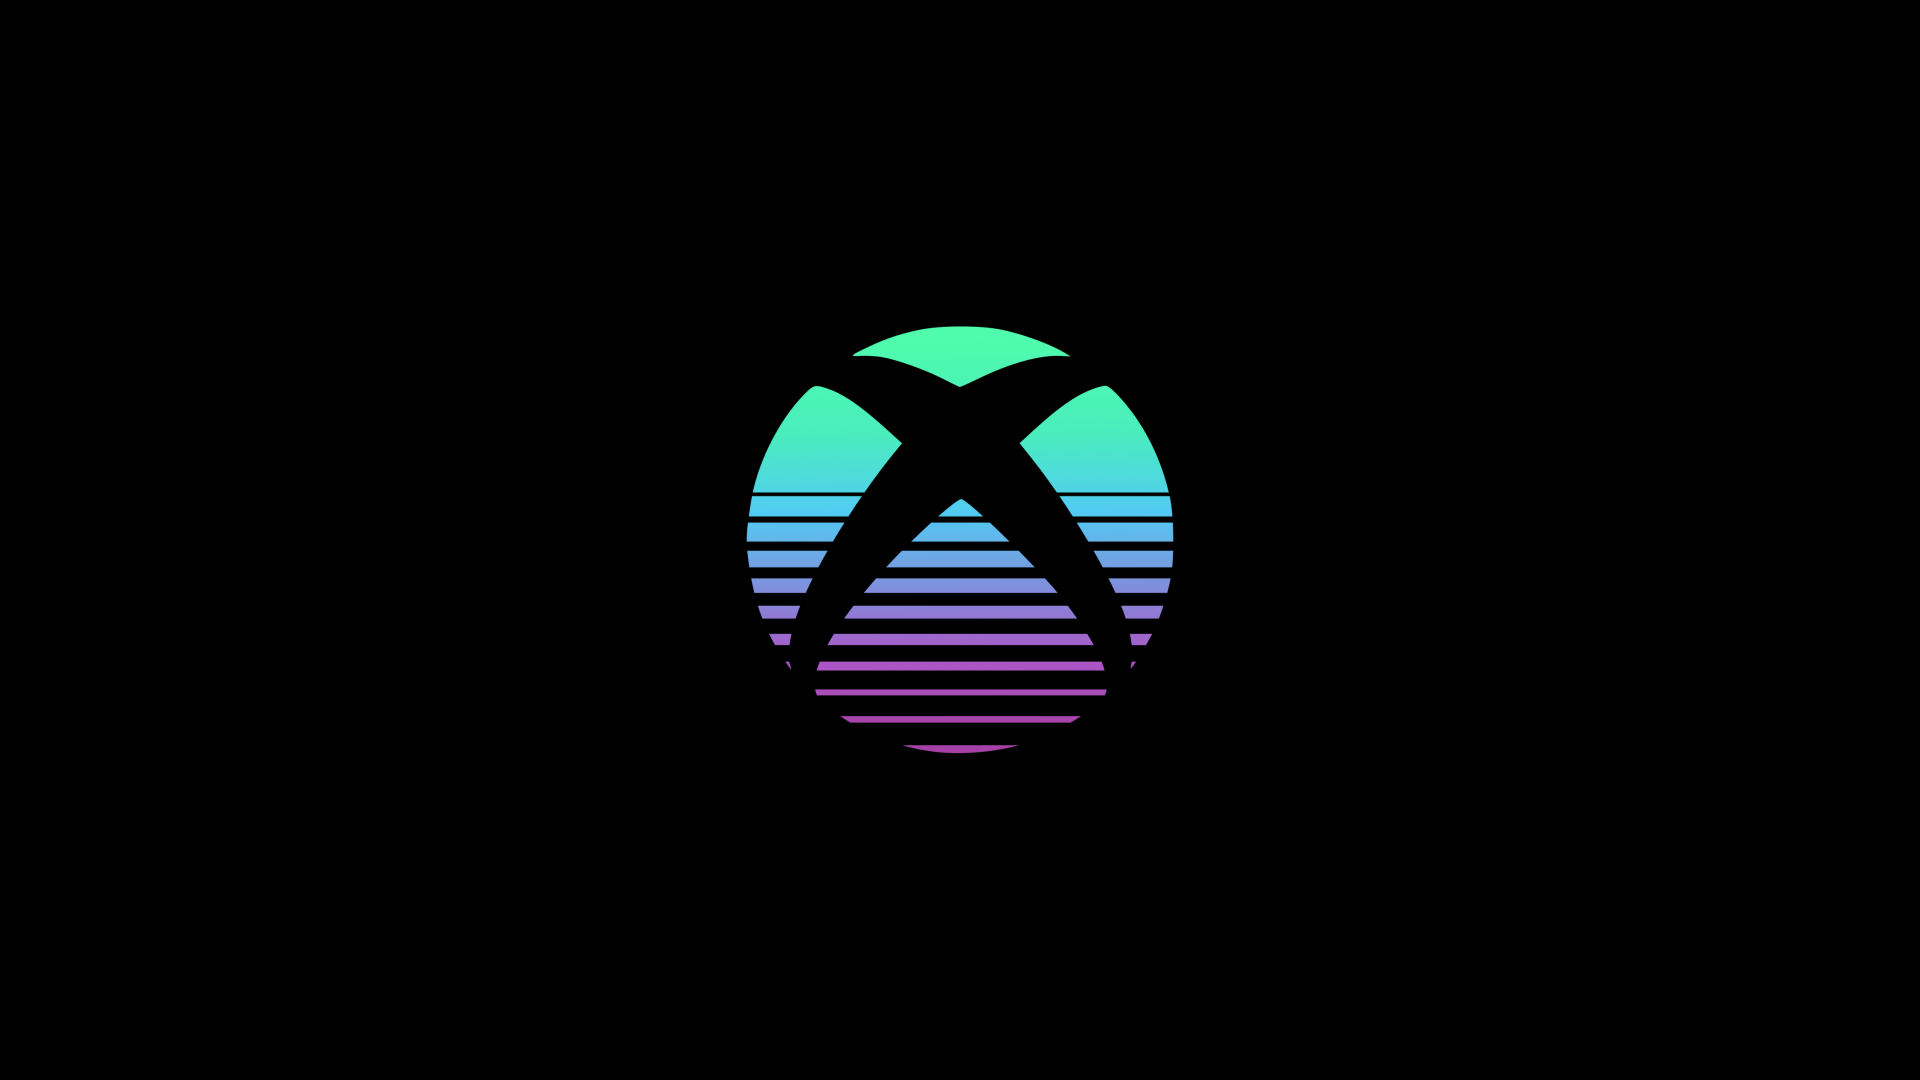 Xbox Wallpaper 4k Logo Black Background Amoled